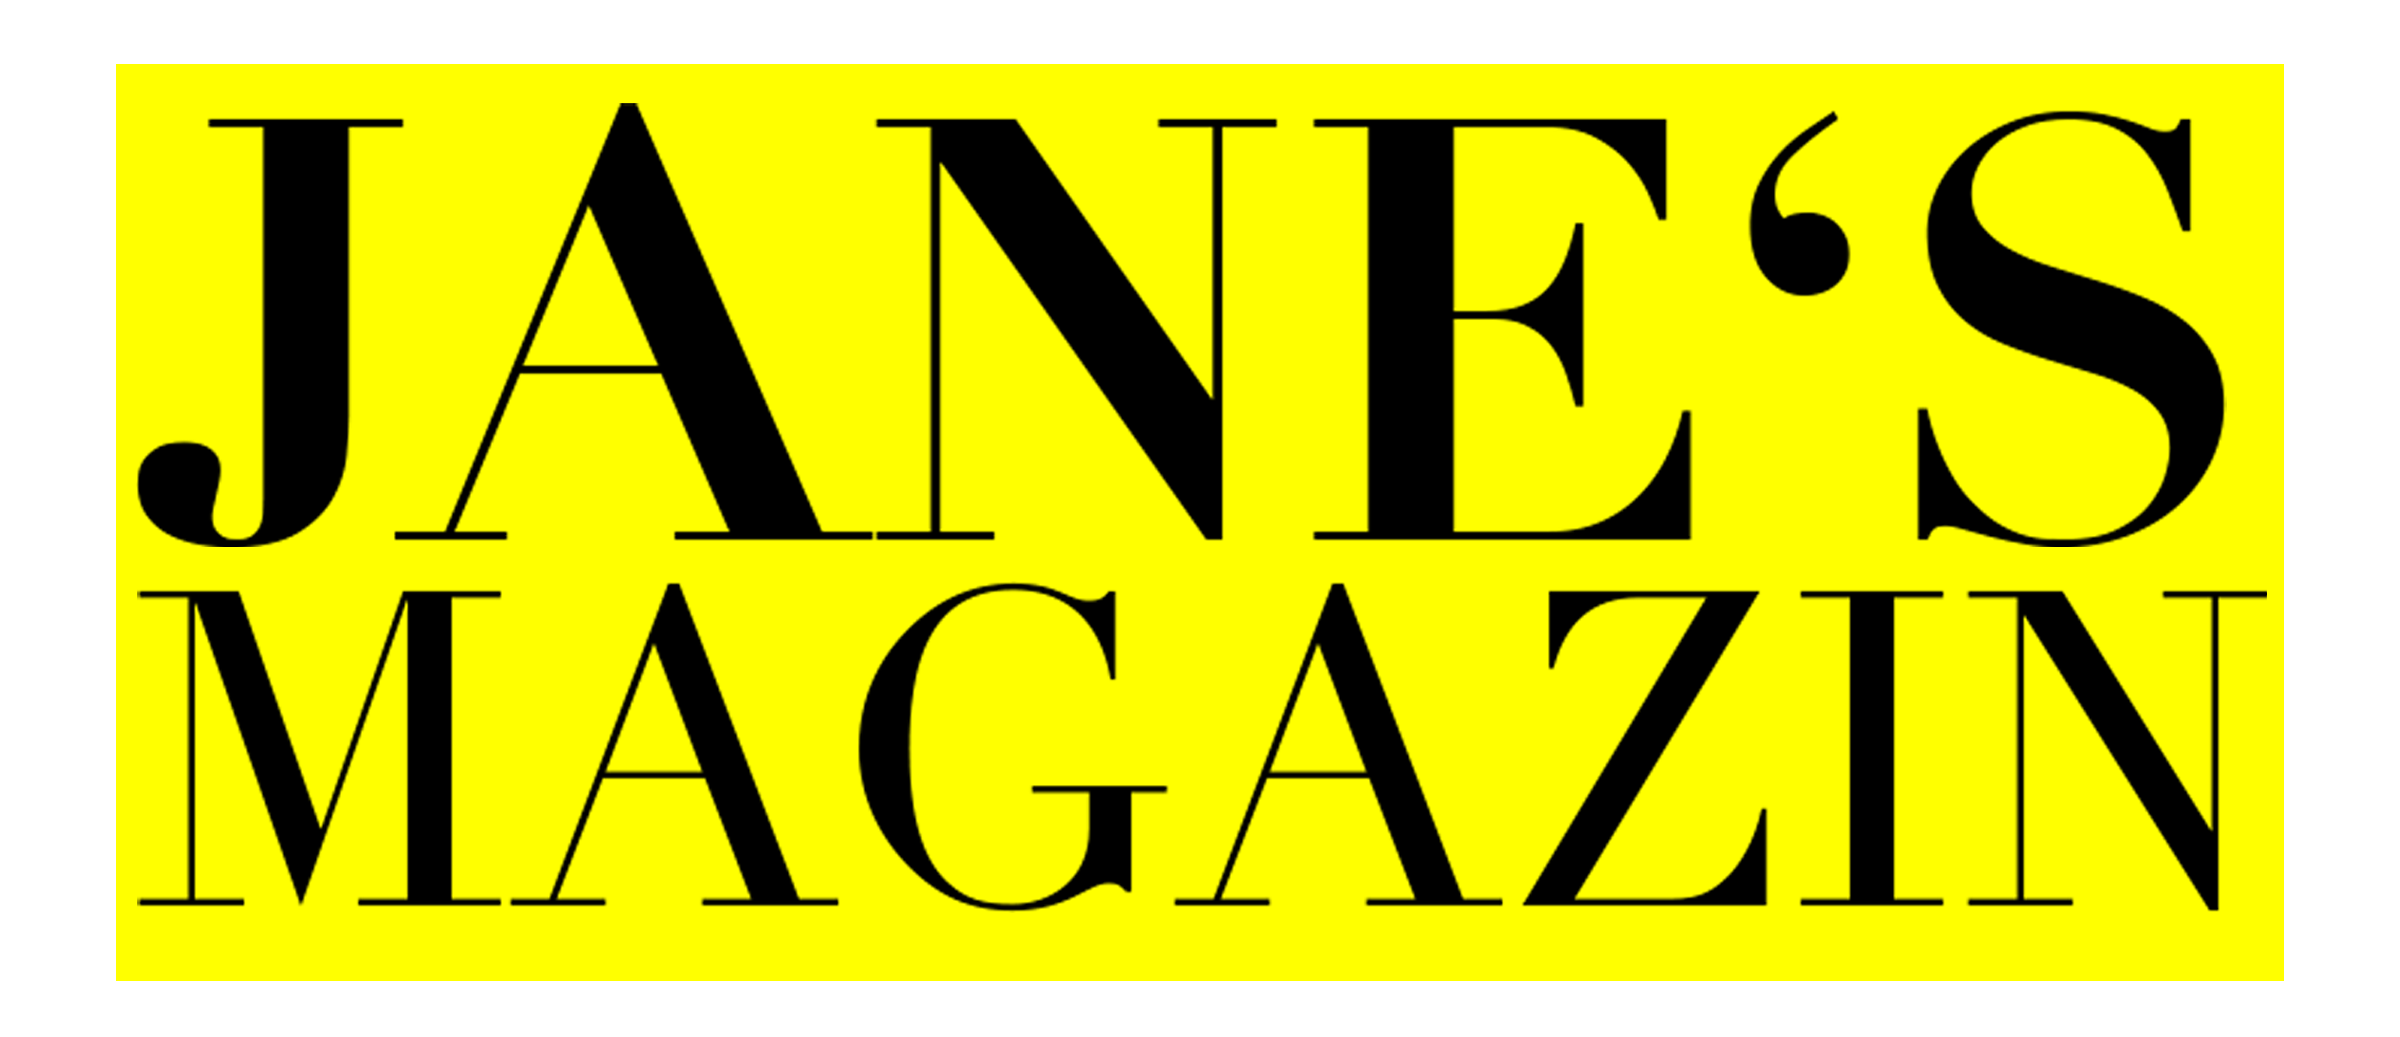 Janes-Magazin.de News, Lifestyle, Business